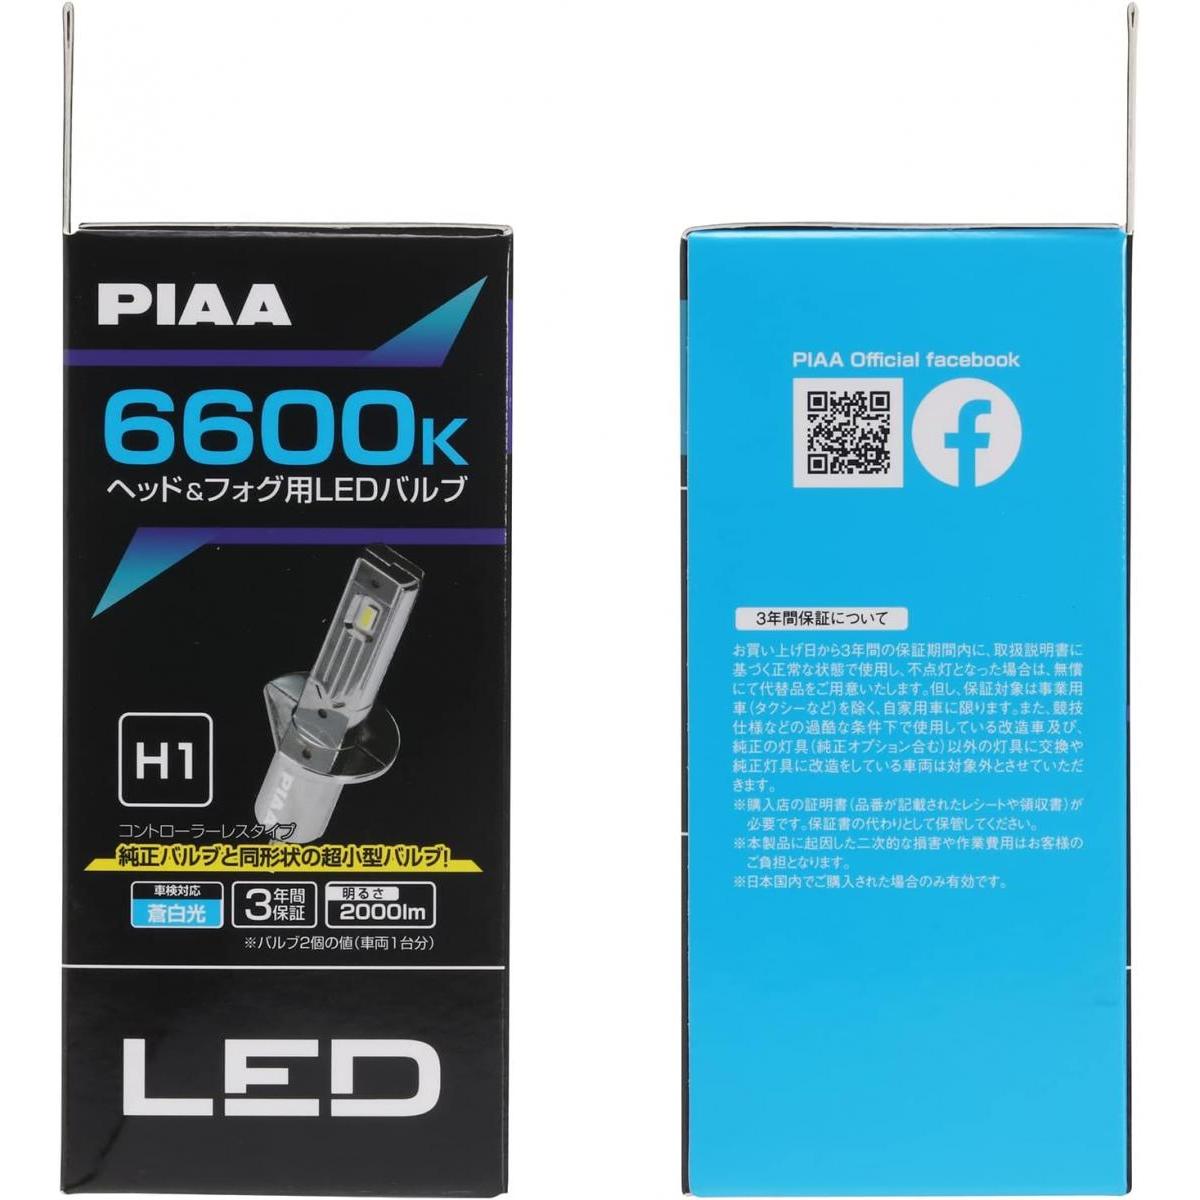 PIAA 6600K ヘッドフォグ用LEDバルブ H1 コントローラーレスタイプ